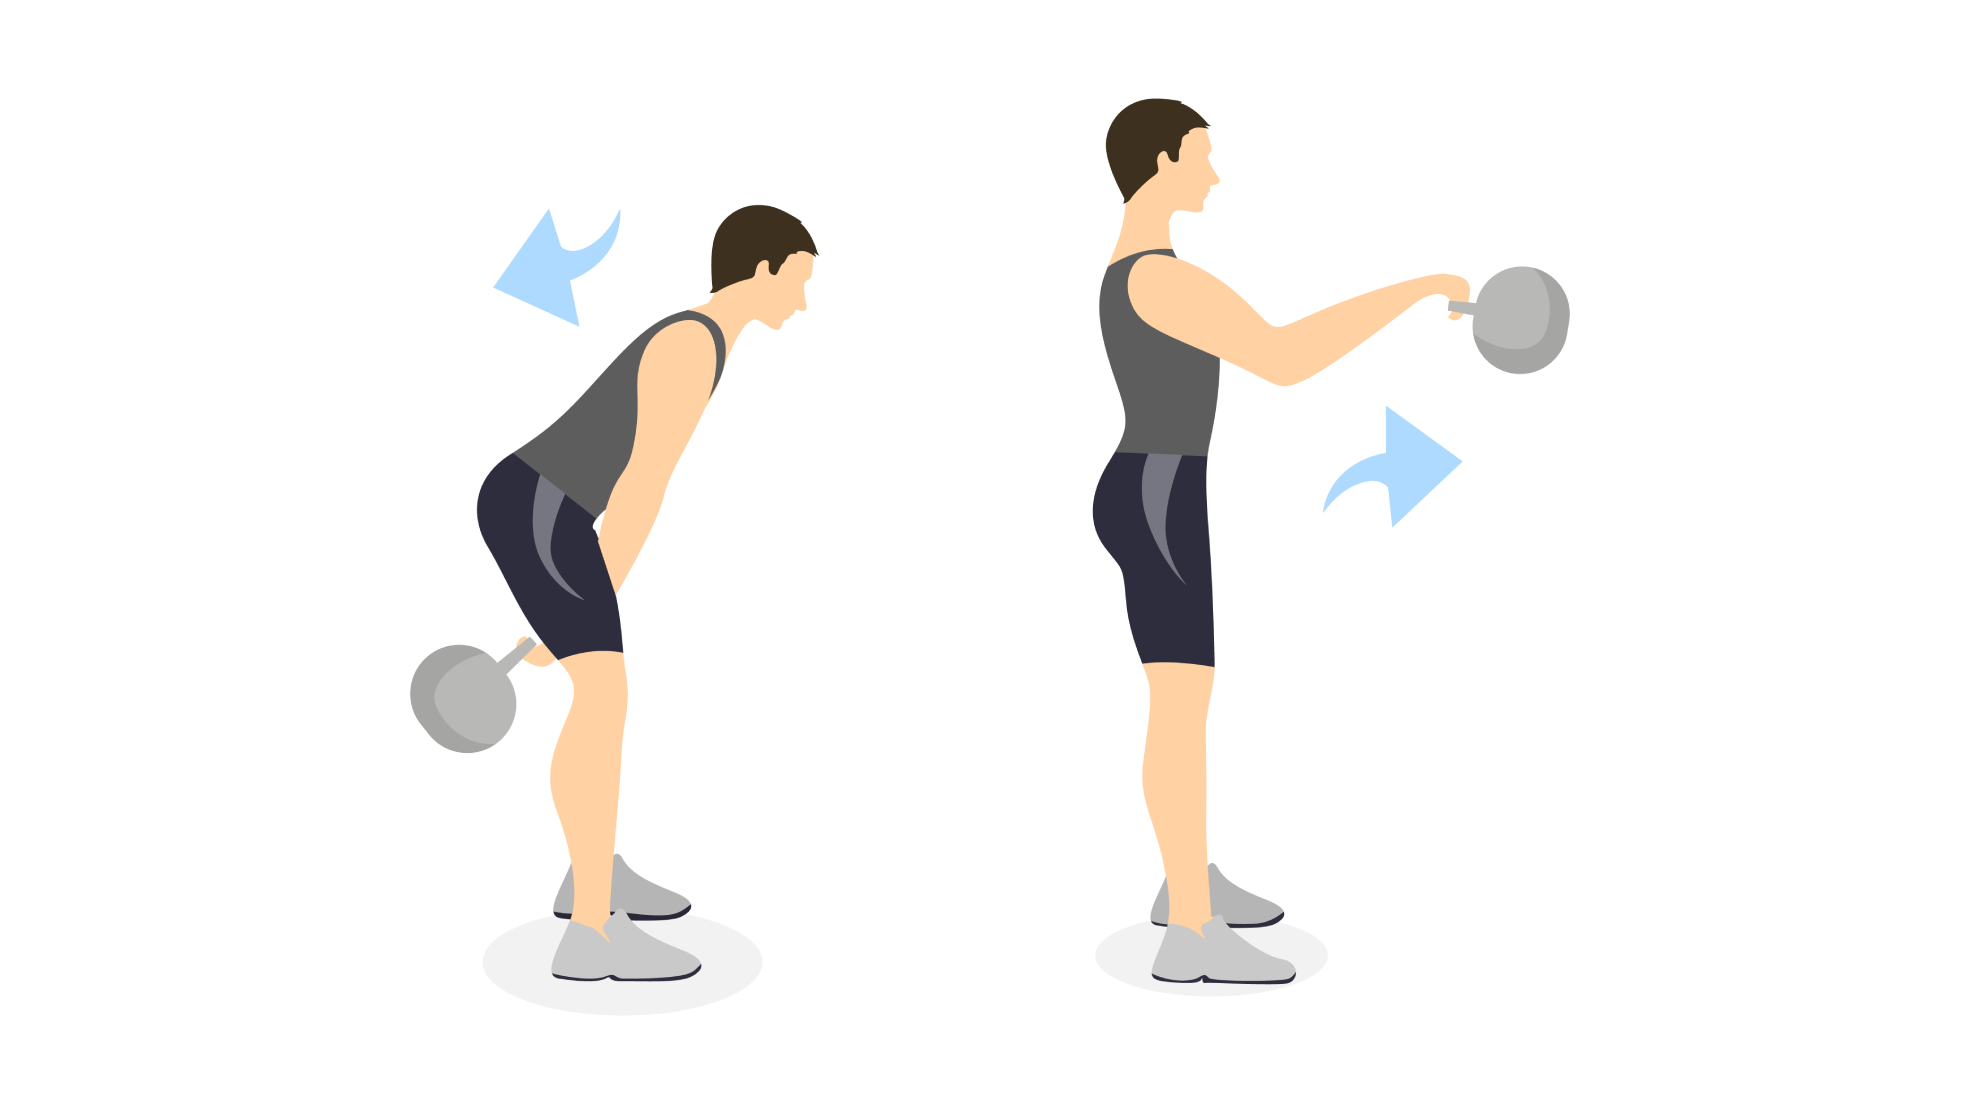 Entrenamiento con kettlebell: los mejores ejercicios con pesa rusa para ganar músculo y conseguir un six pack